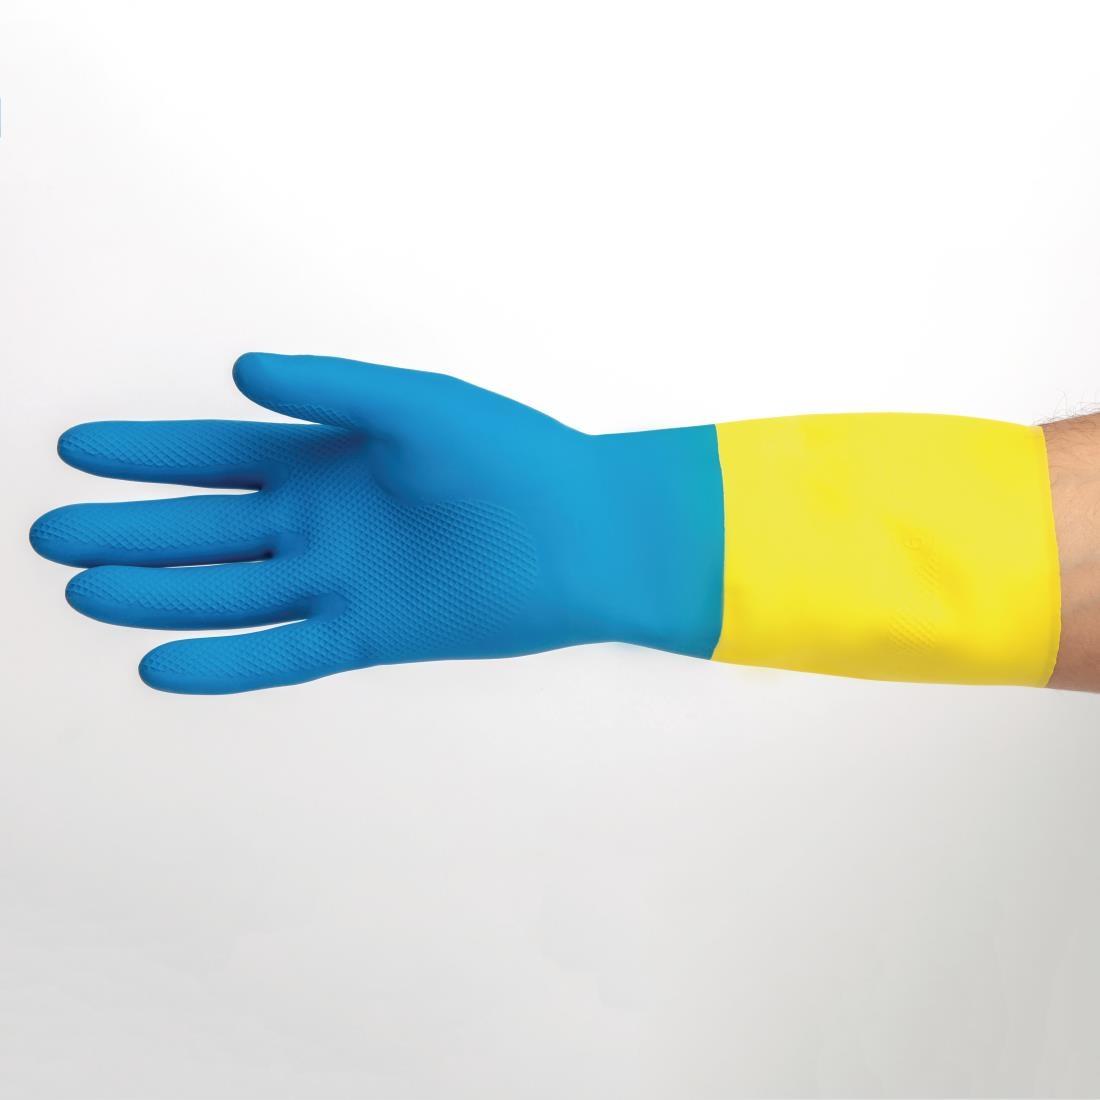 MAPA Alto 405 Liquid-Proof Heavy-Duty Janitorial Gloves Blue and Yellow Medium - FA296-M  - 6